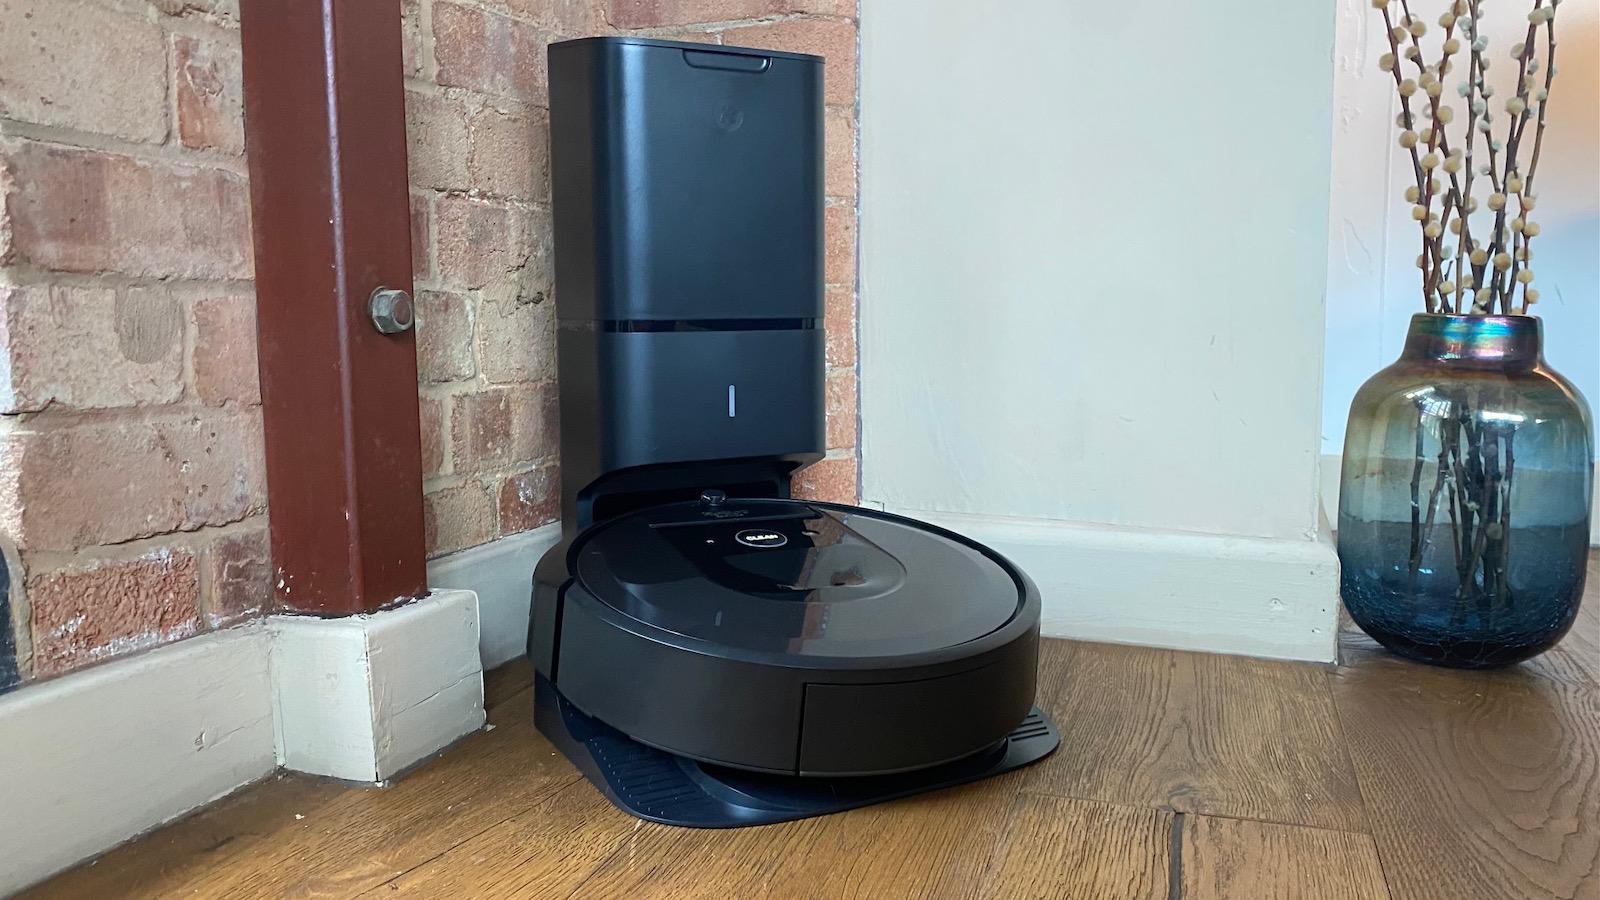 جارو برقی رباتی iRobot Roomba i7+ with Dirt Disposal